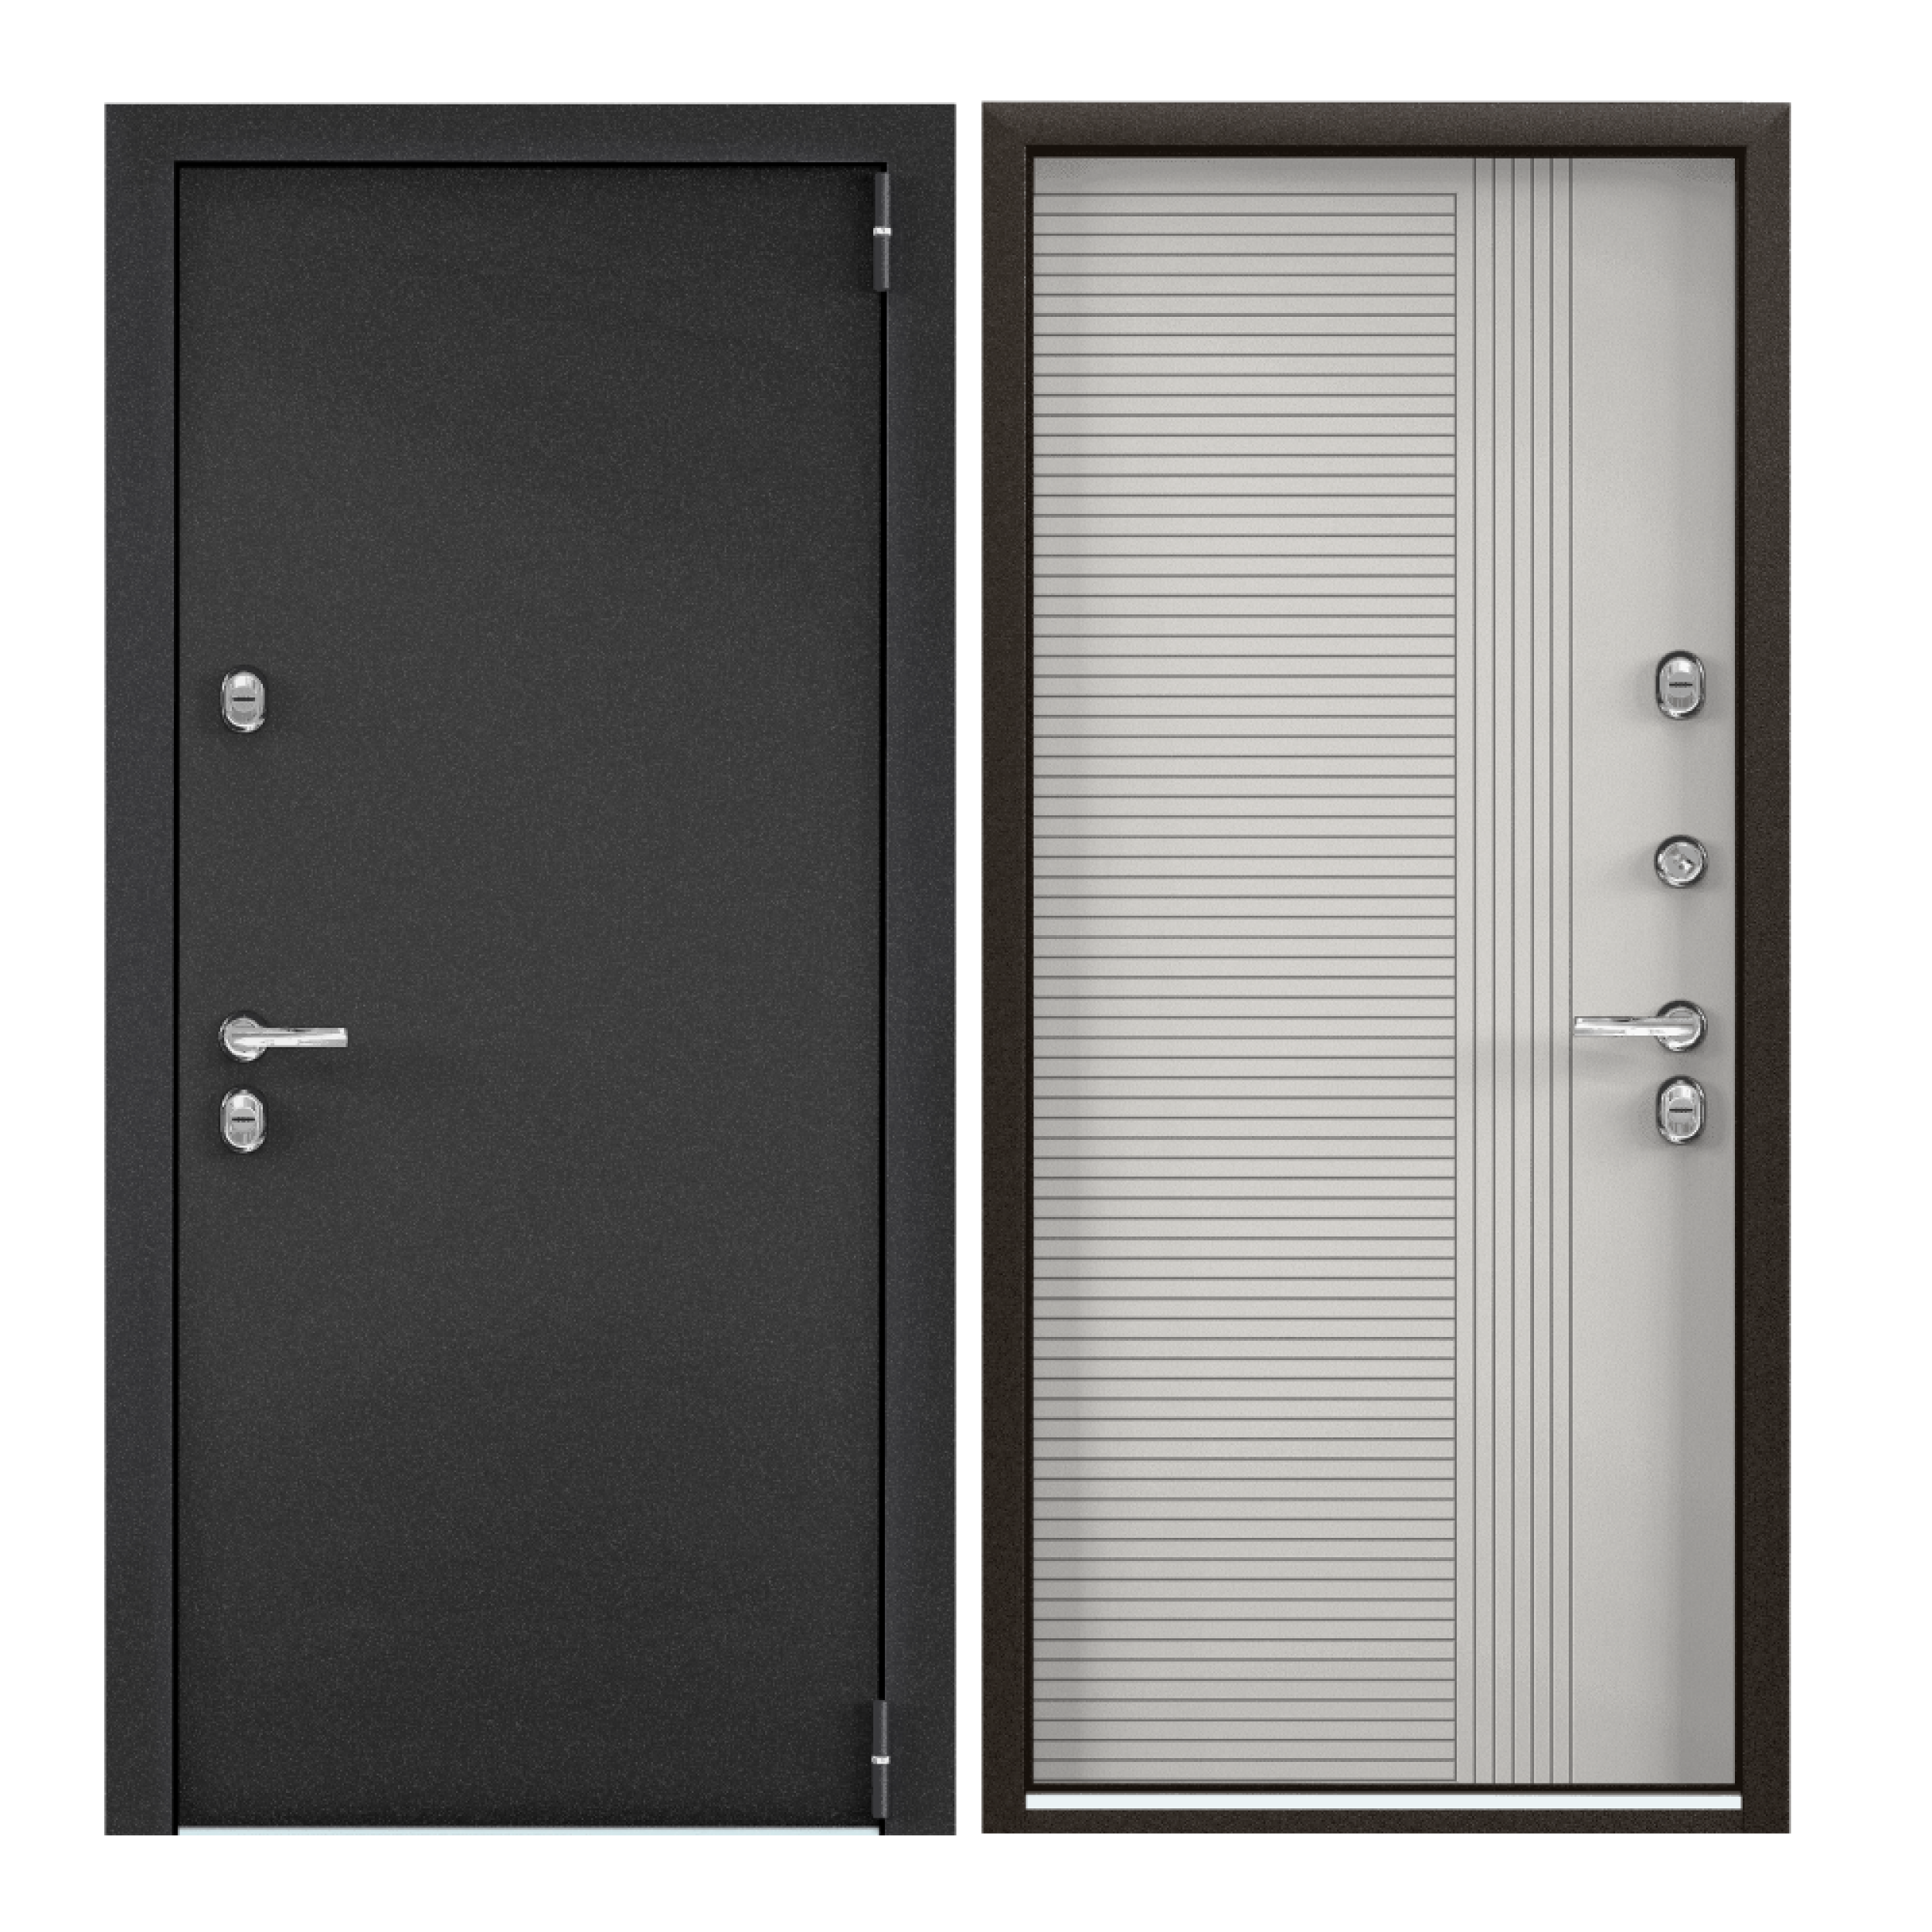 Дверь входная Torex для дома Village advanced 950х2050 левый терморазрыв тепло-шумоизоляция антикоррозийная защита замки 4го и 3го класса темно-серый